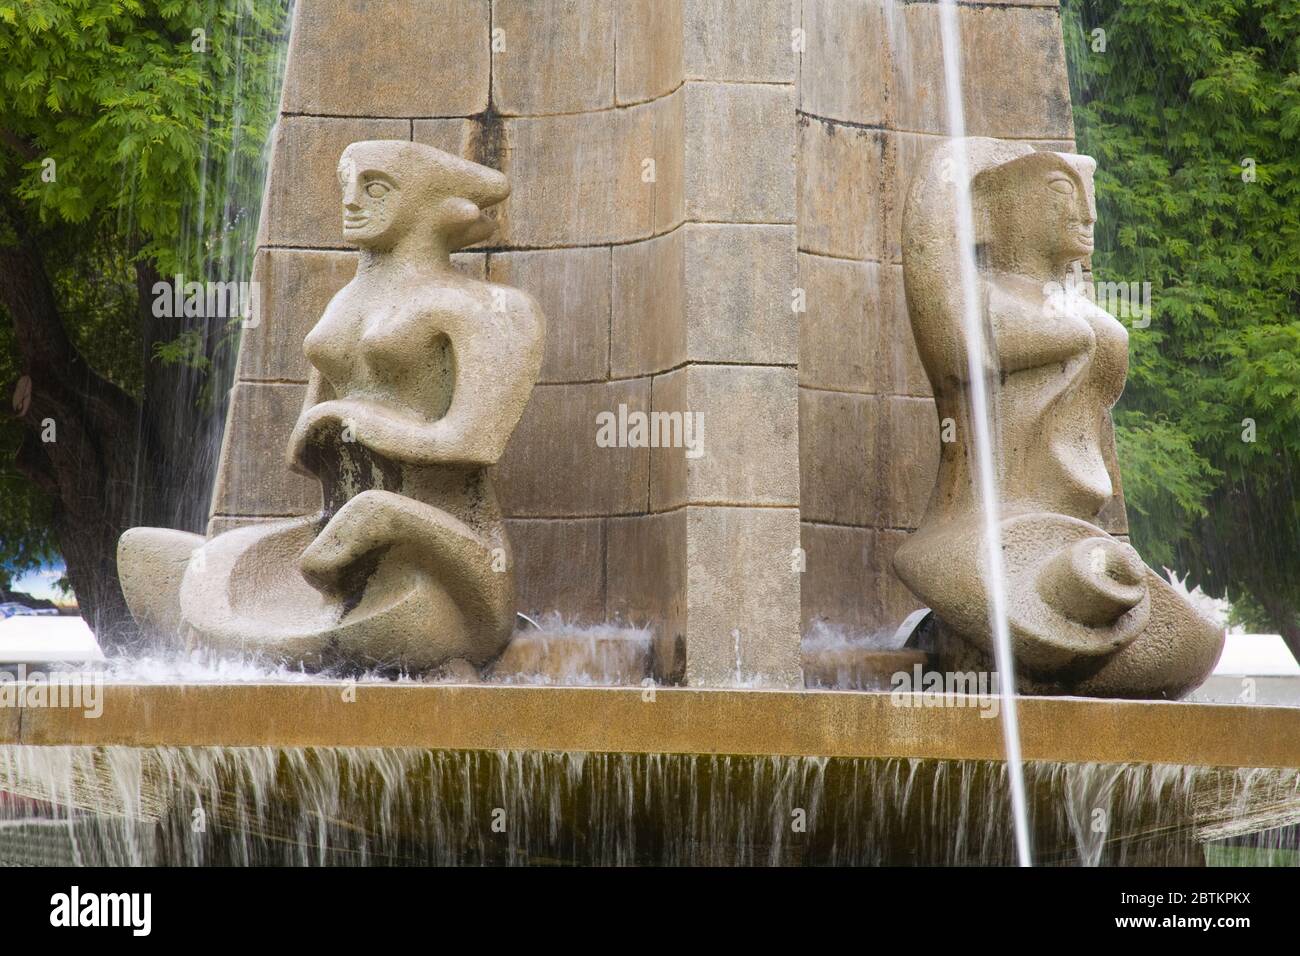 Plaza de Armas Fountain, Colonial City of La Serena,Norte Chico Region, Chile, South America Stock Photo